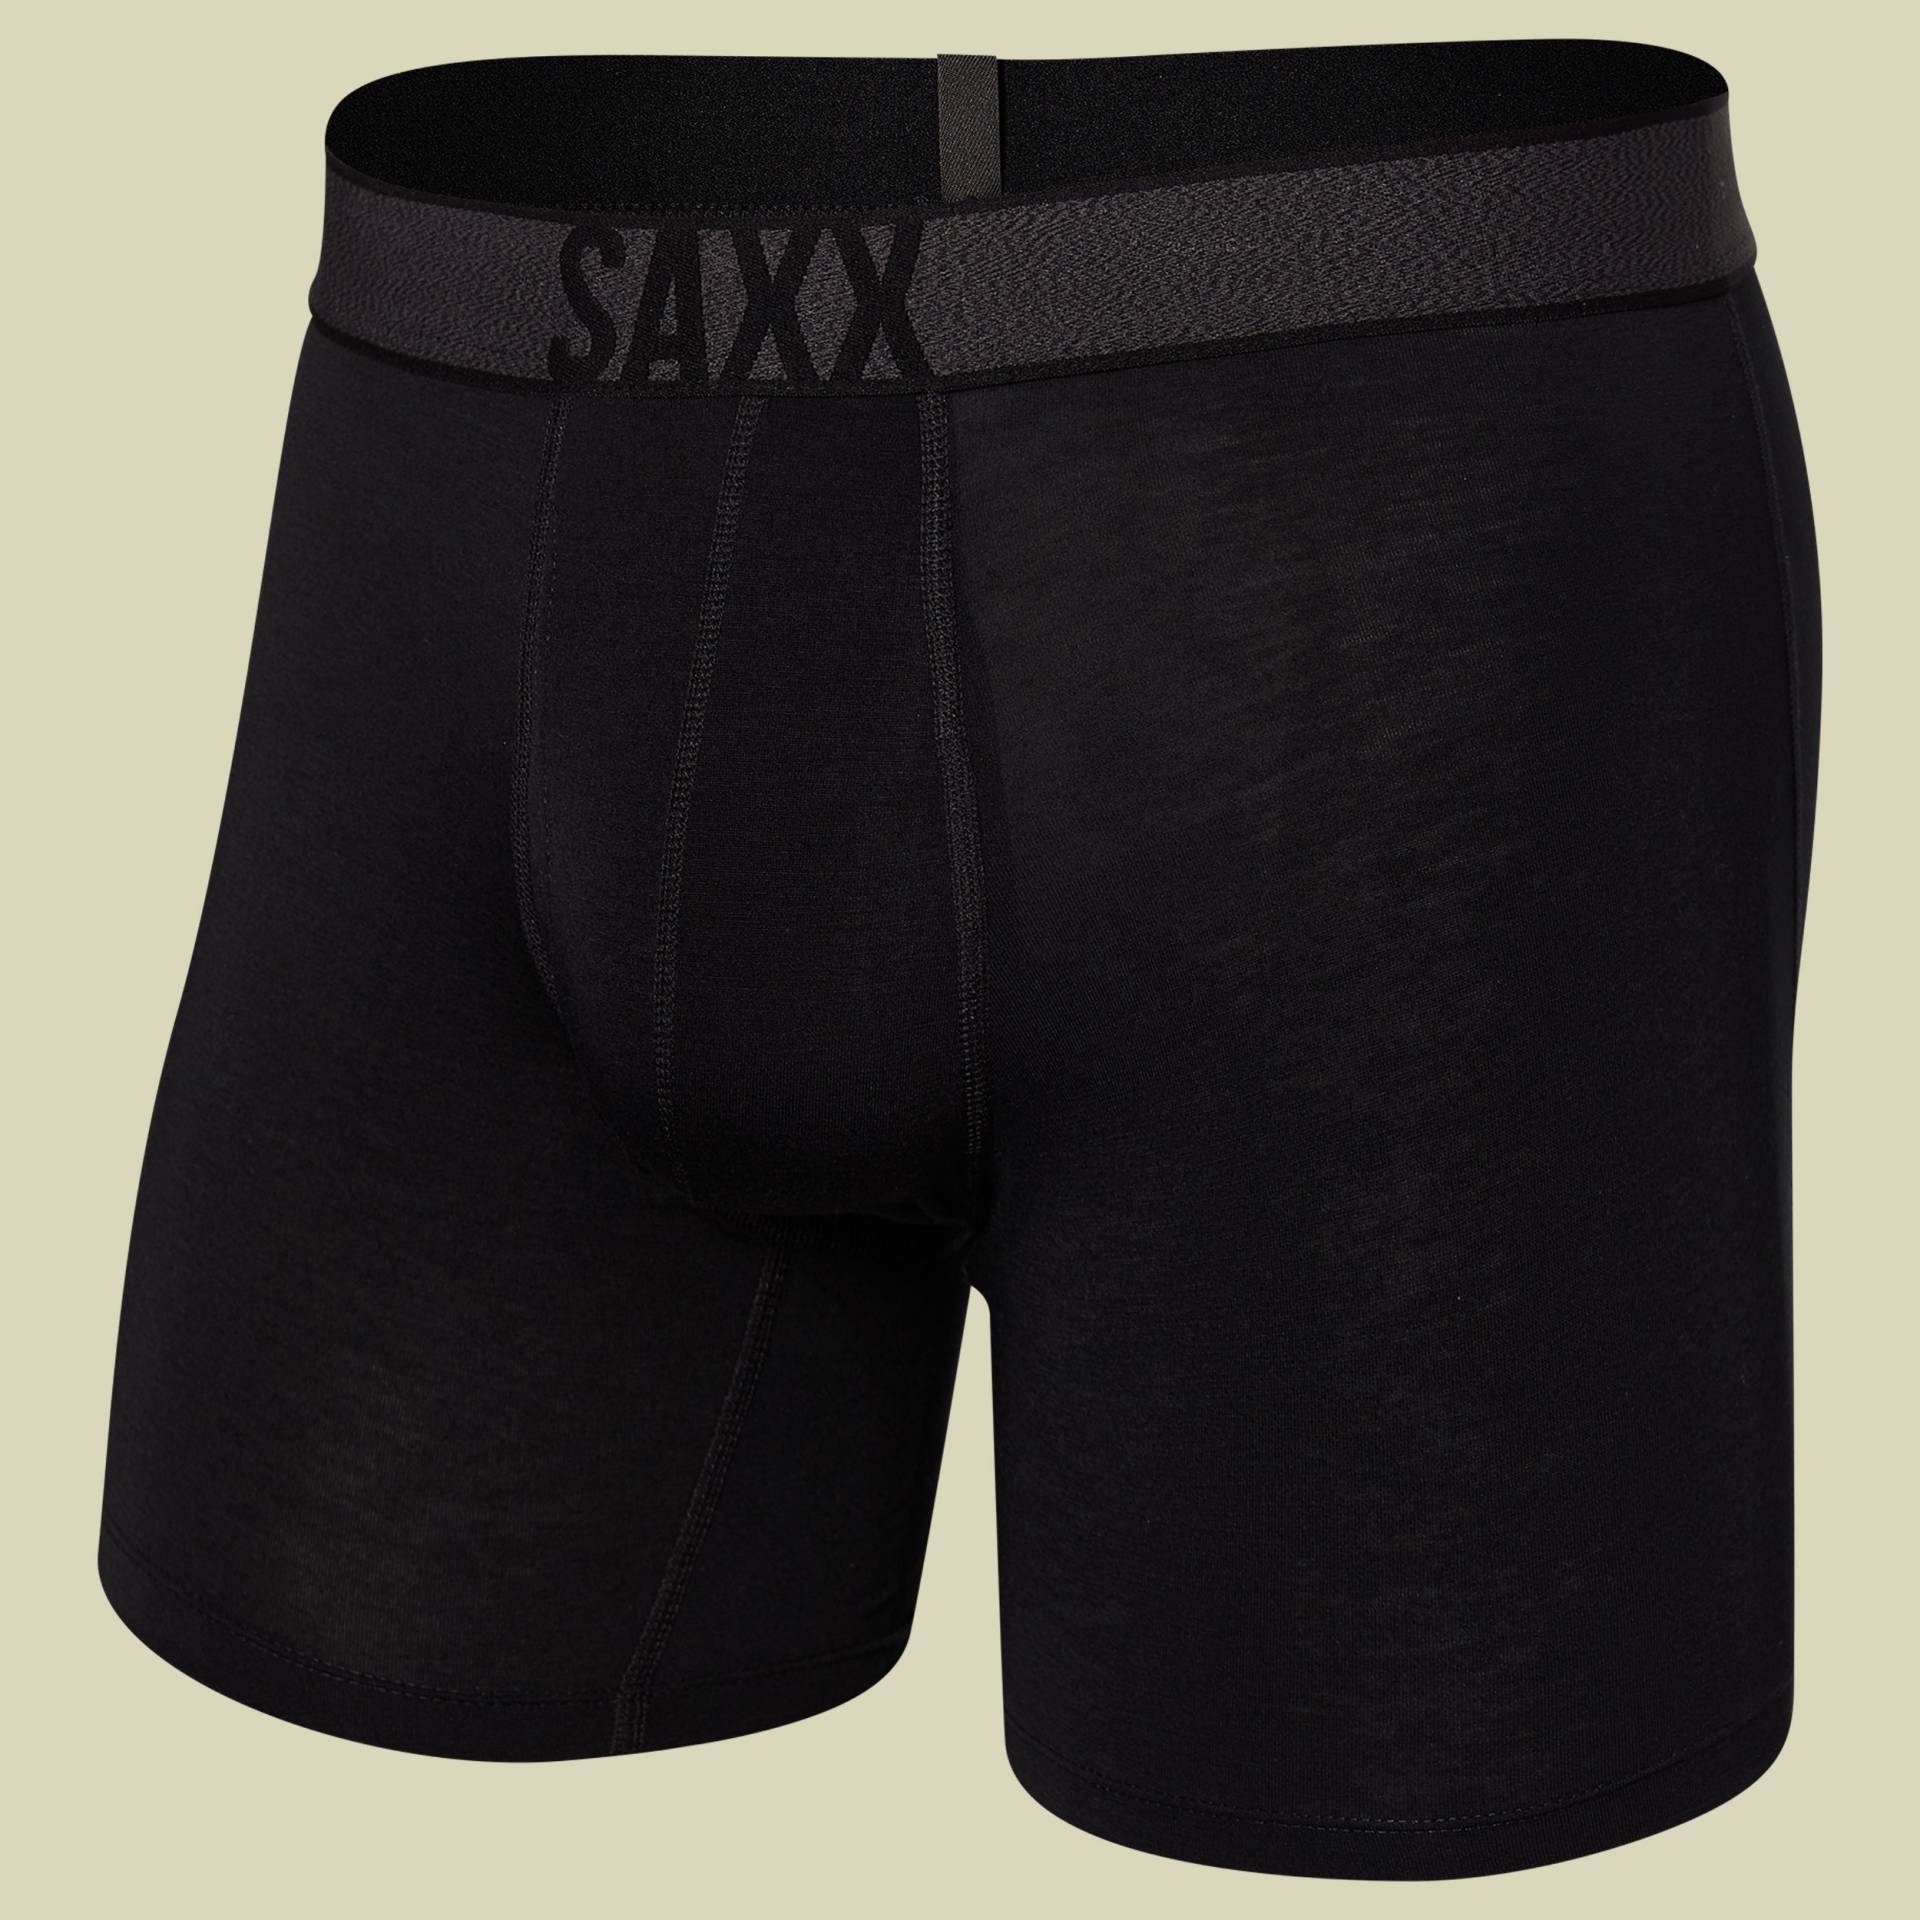 Roast Master Mid-Weight Boxer Brief Fly Men Größe S Farbe black von Saxx